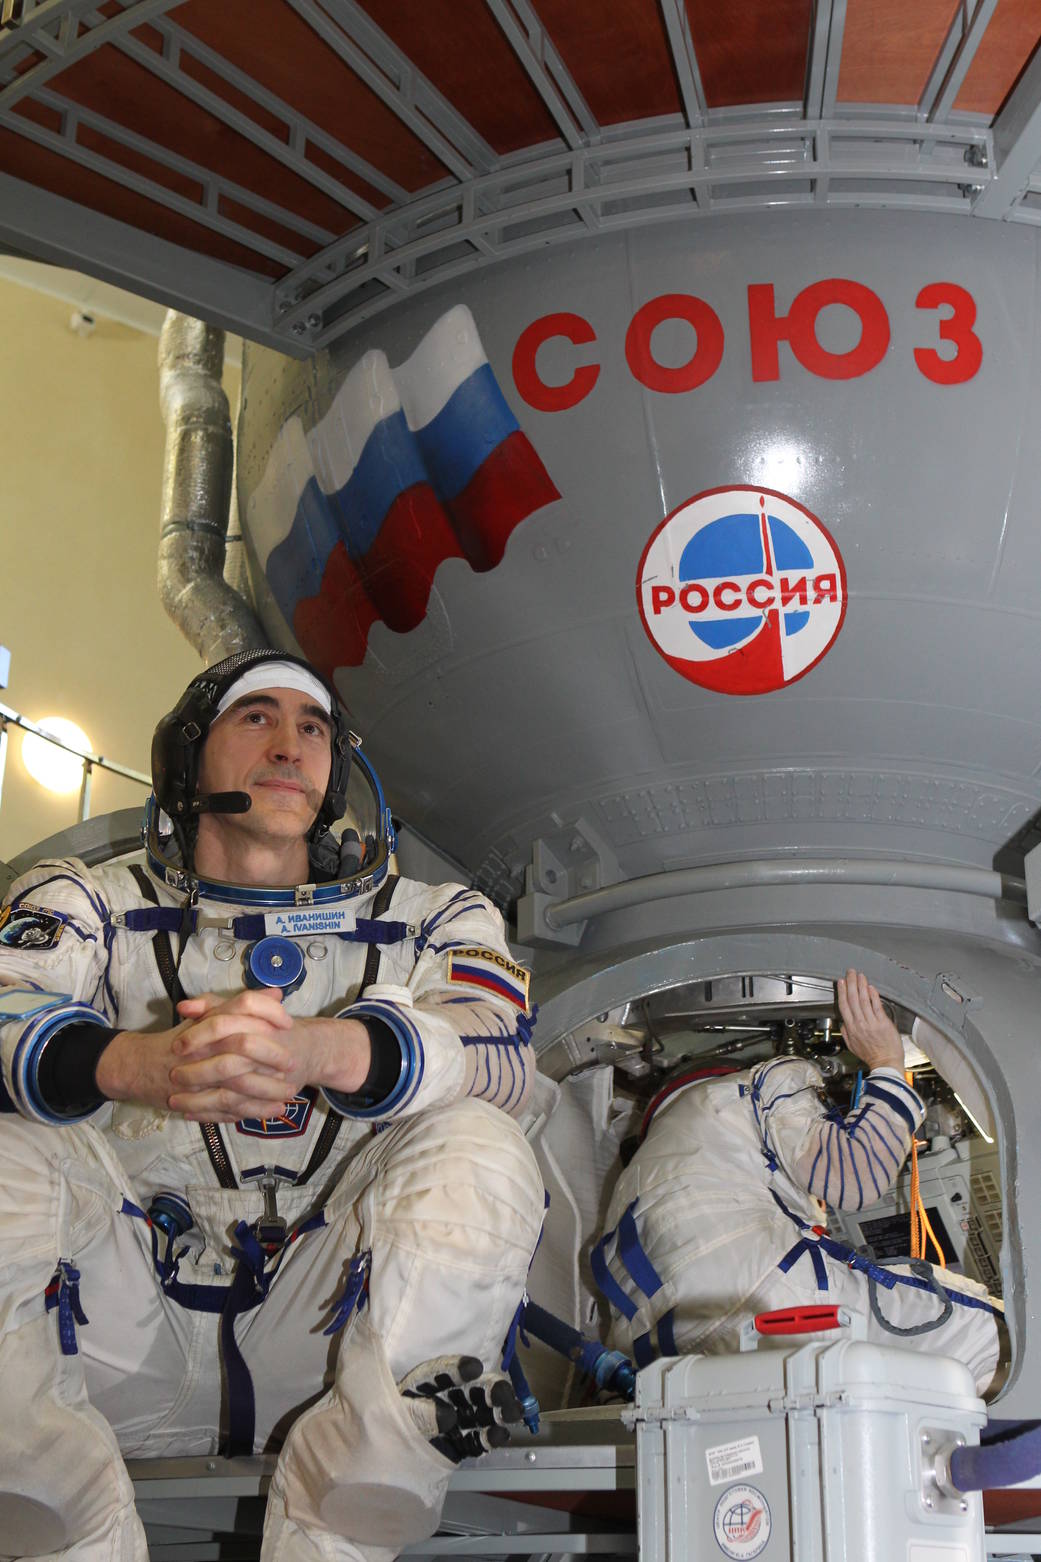 Cosmonaut Anatoly Ivanishin